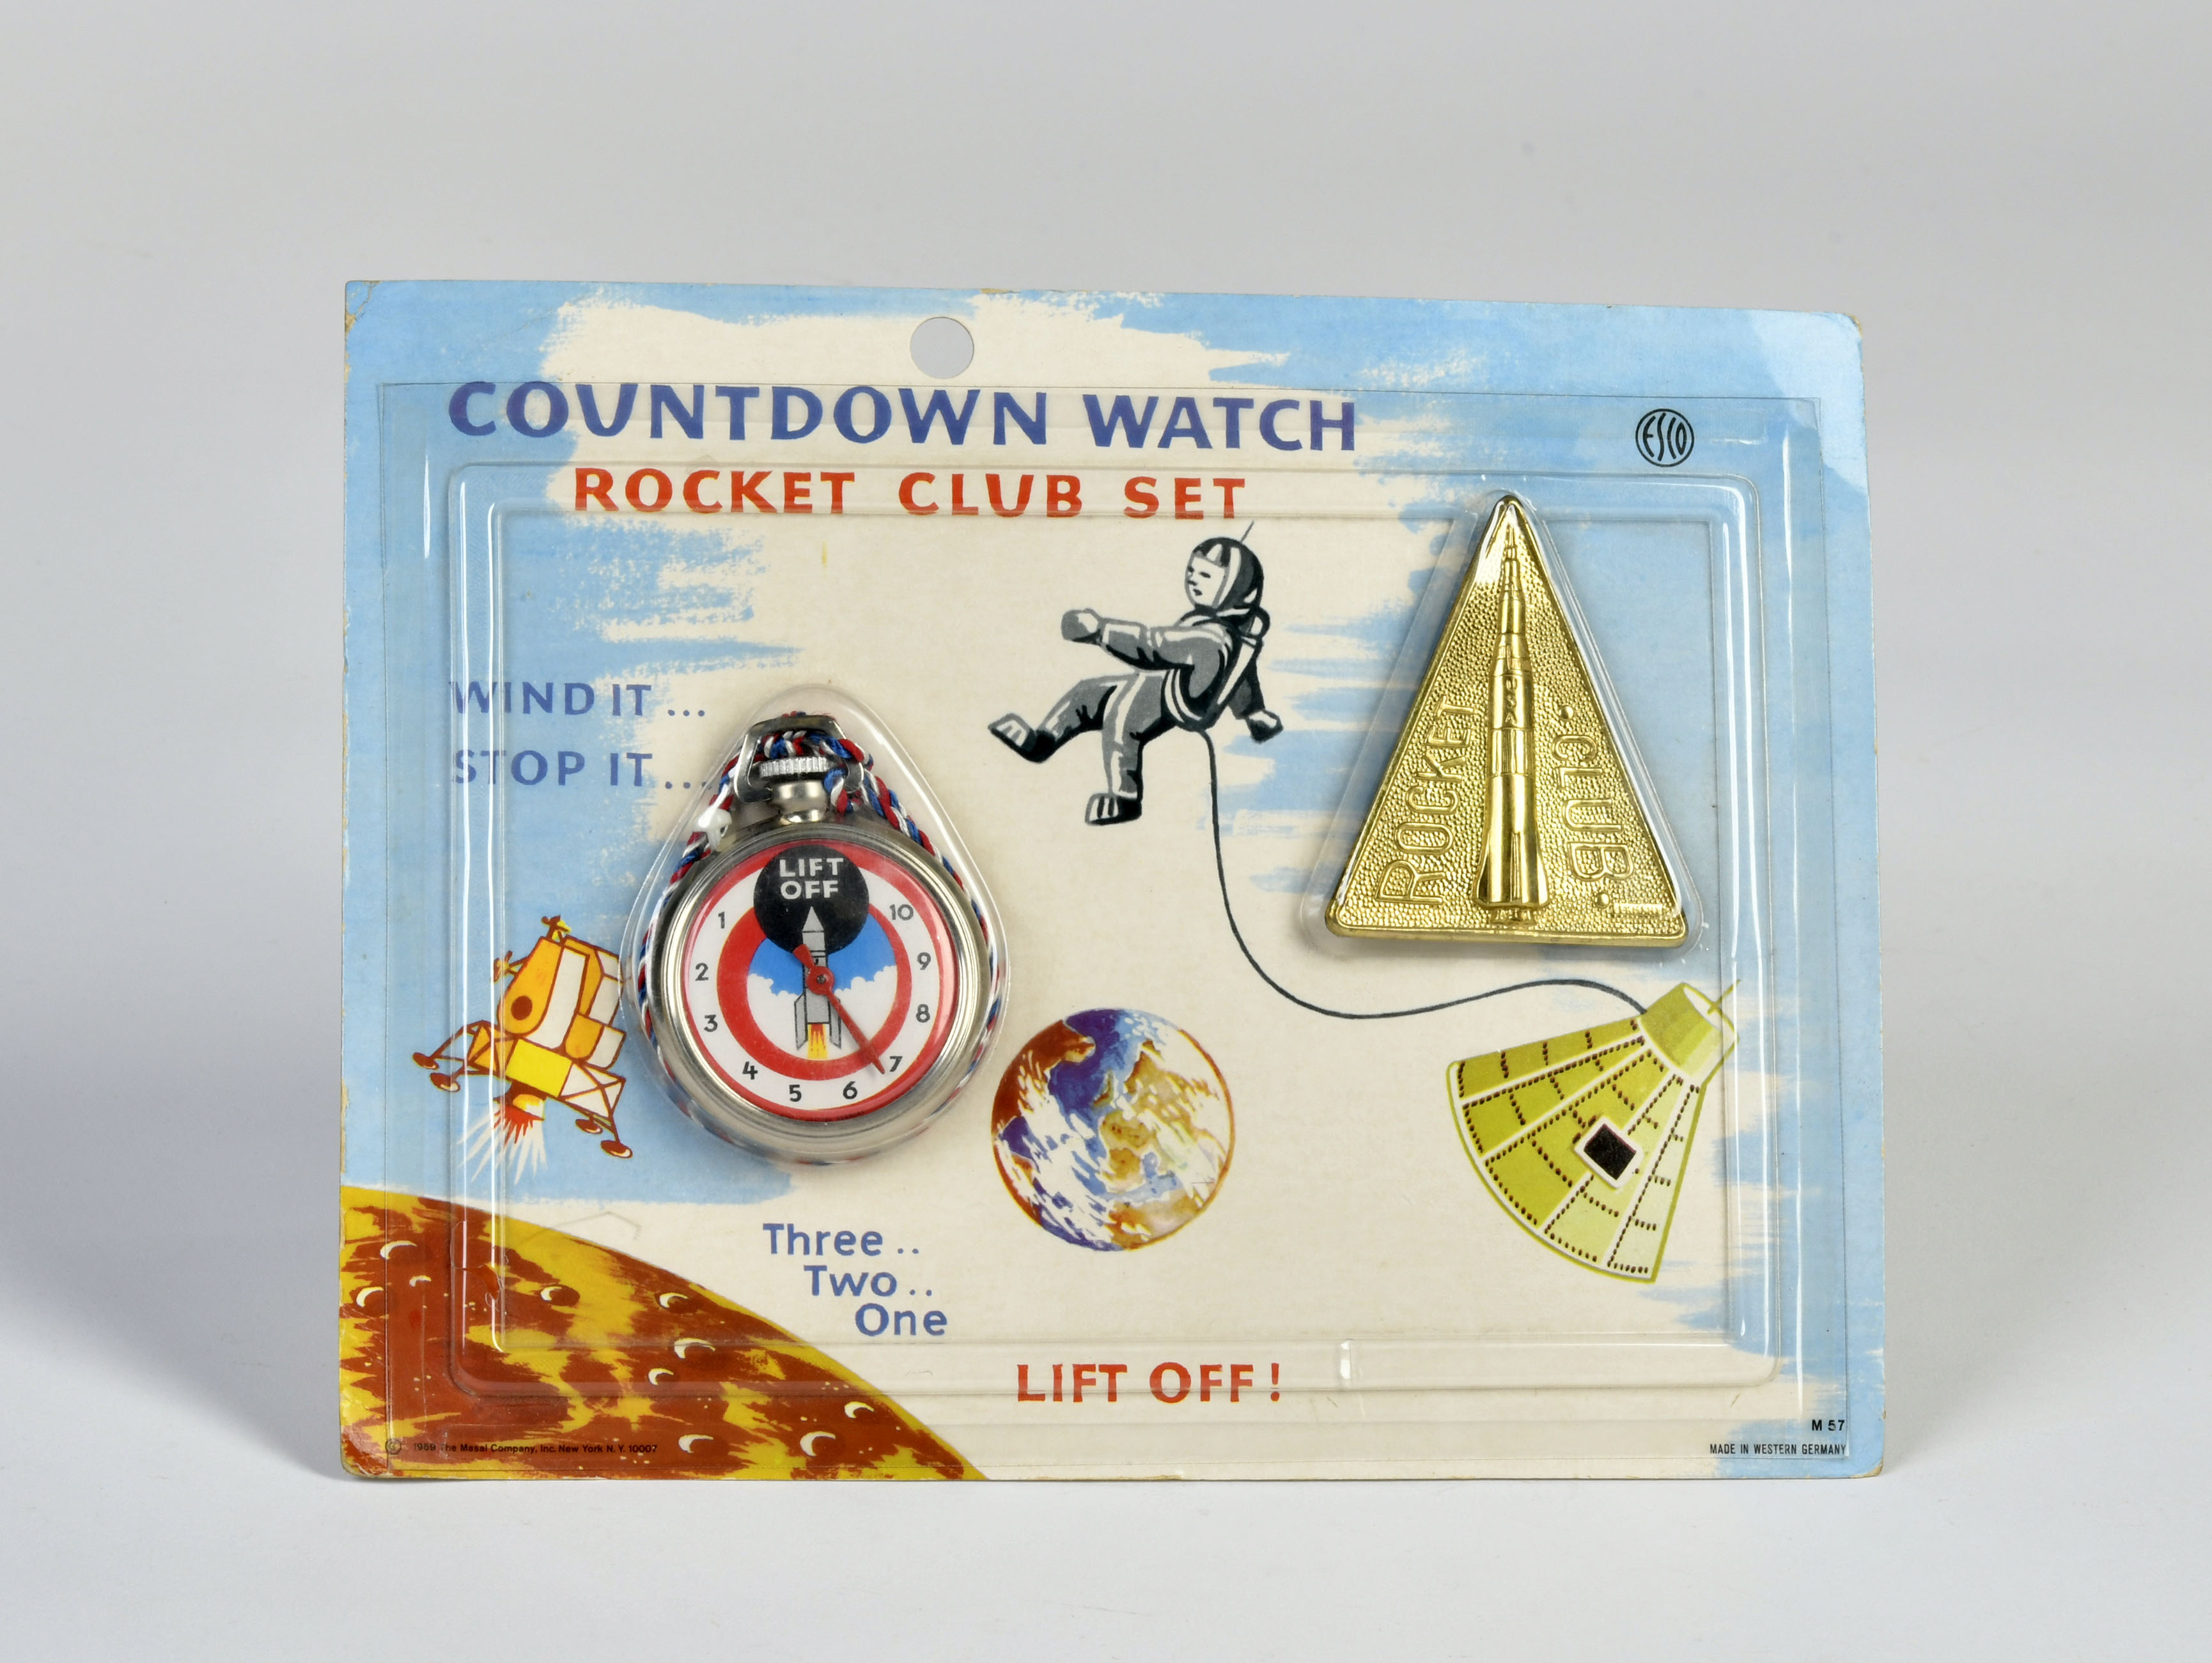 Space Countdown Watch Rocket Club Set, 20x15 cm, W.-Germany, C 1